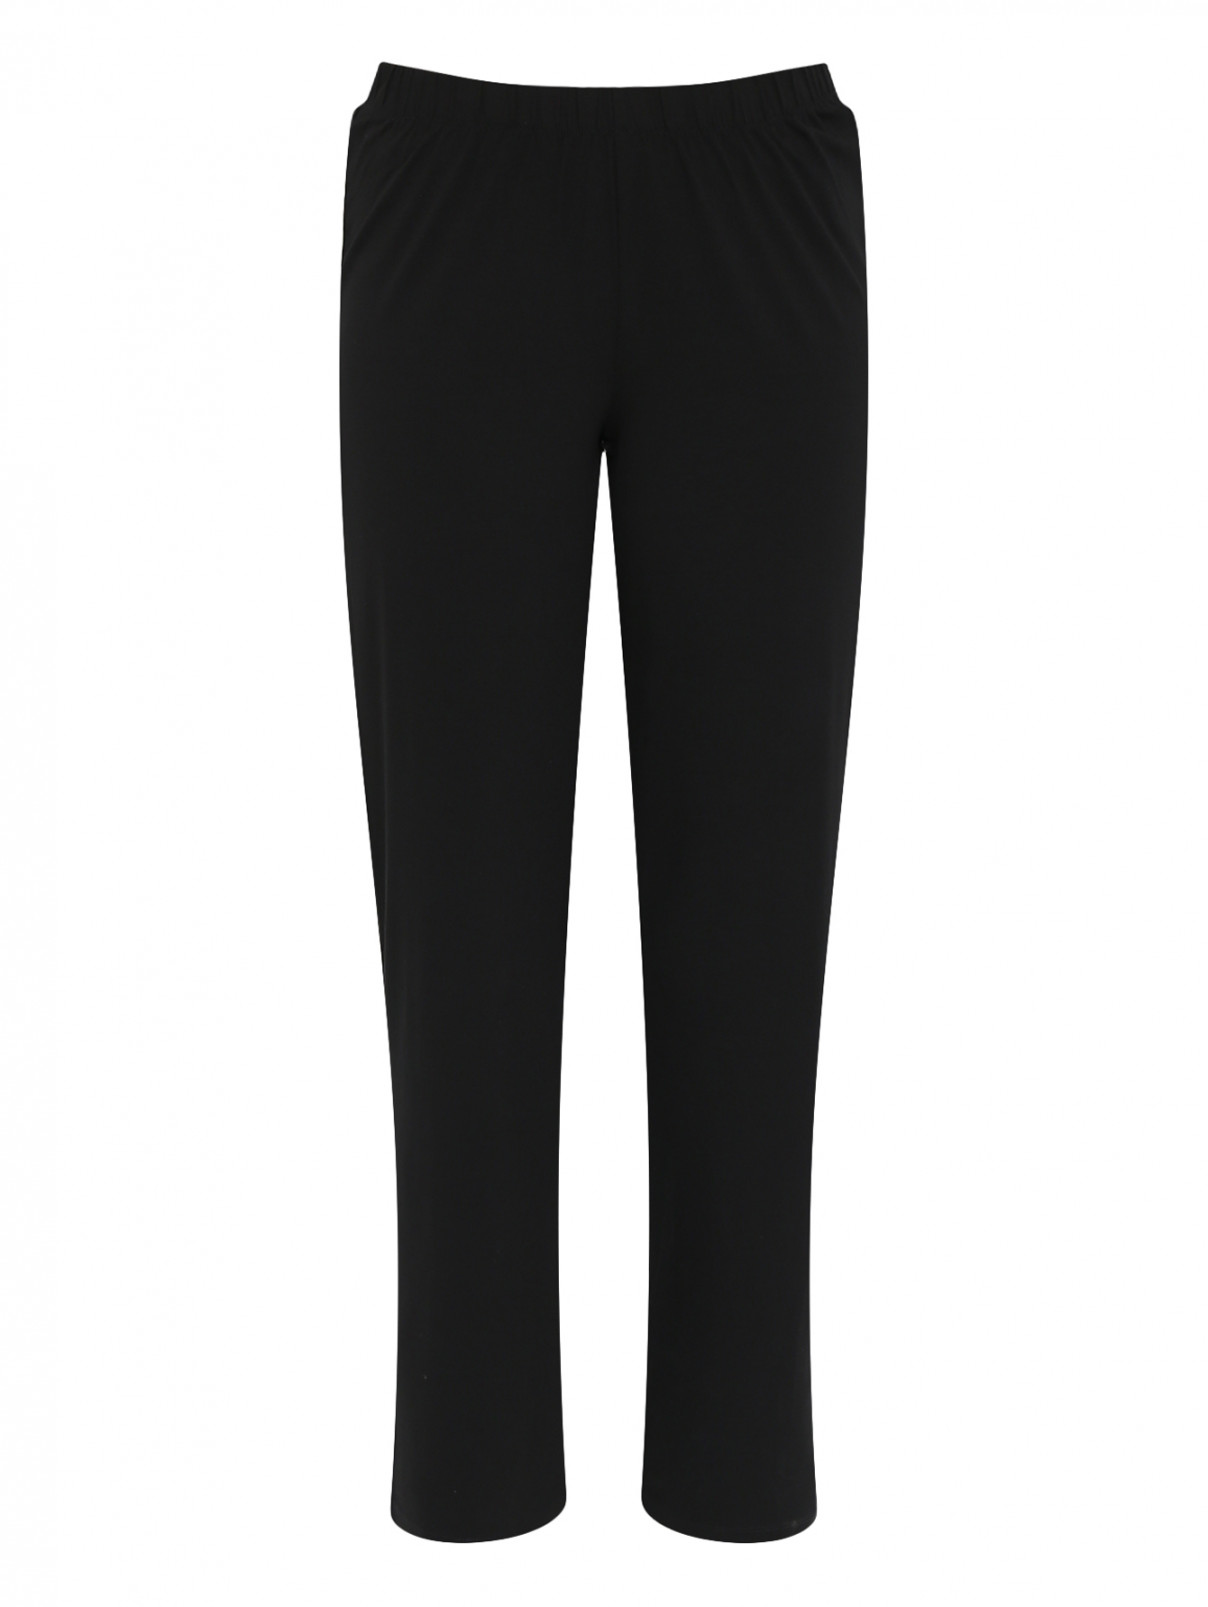 Трикотажные брюки на резинке Persona by Marina Rinaldi  –  Общий вид  – Цвет:  Черный